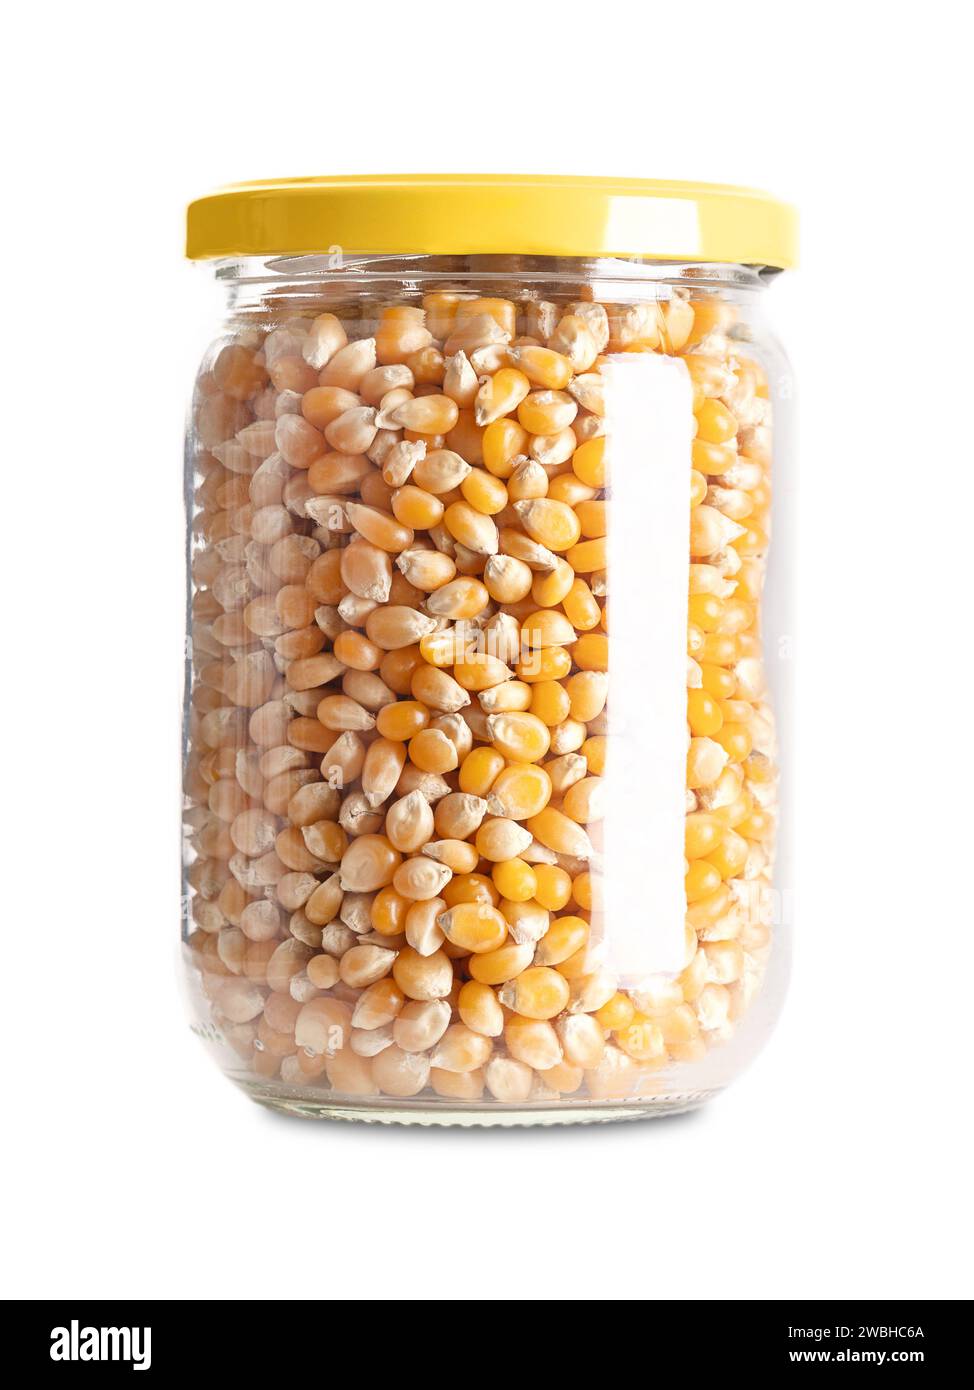 Popcorn non srotolati in un vaso di vetro con tappo a vite. Semi gialli di un tipo di granturco che si espande dal chicco e sbuffa quando riscaldato. Foto Stock